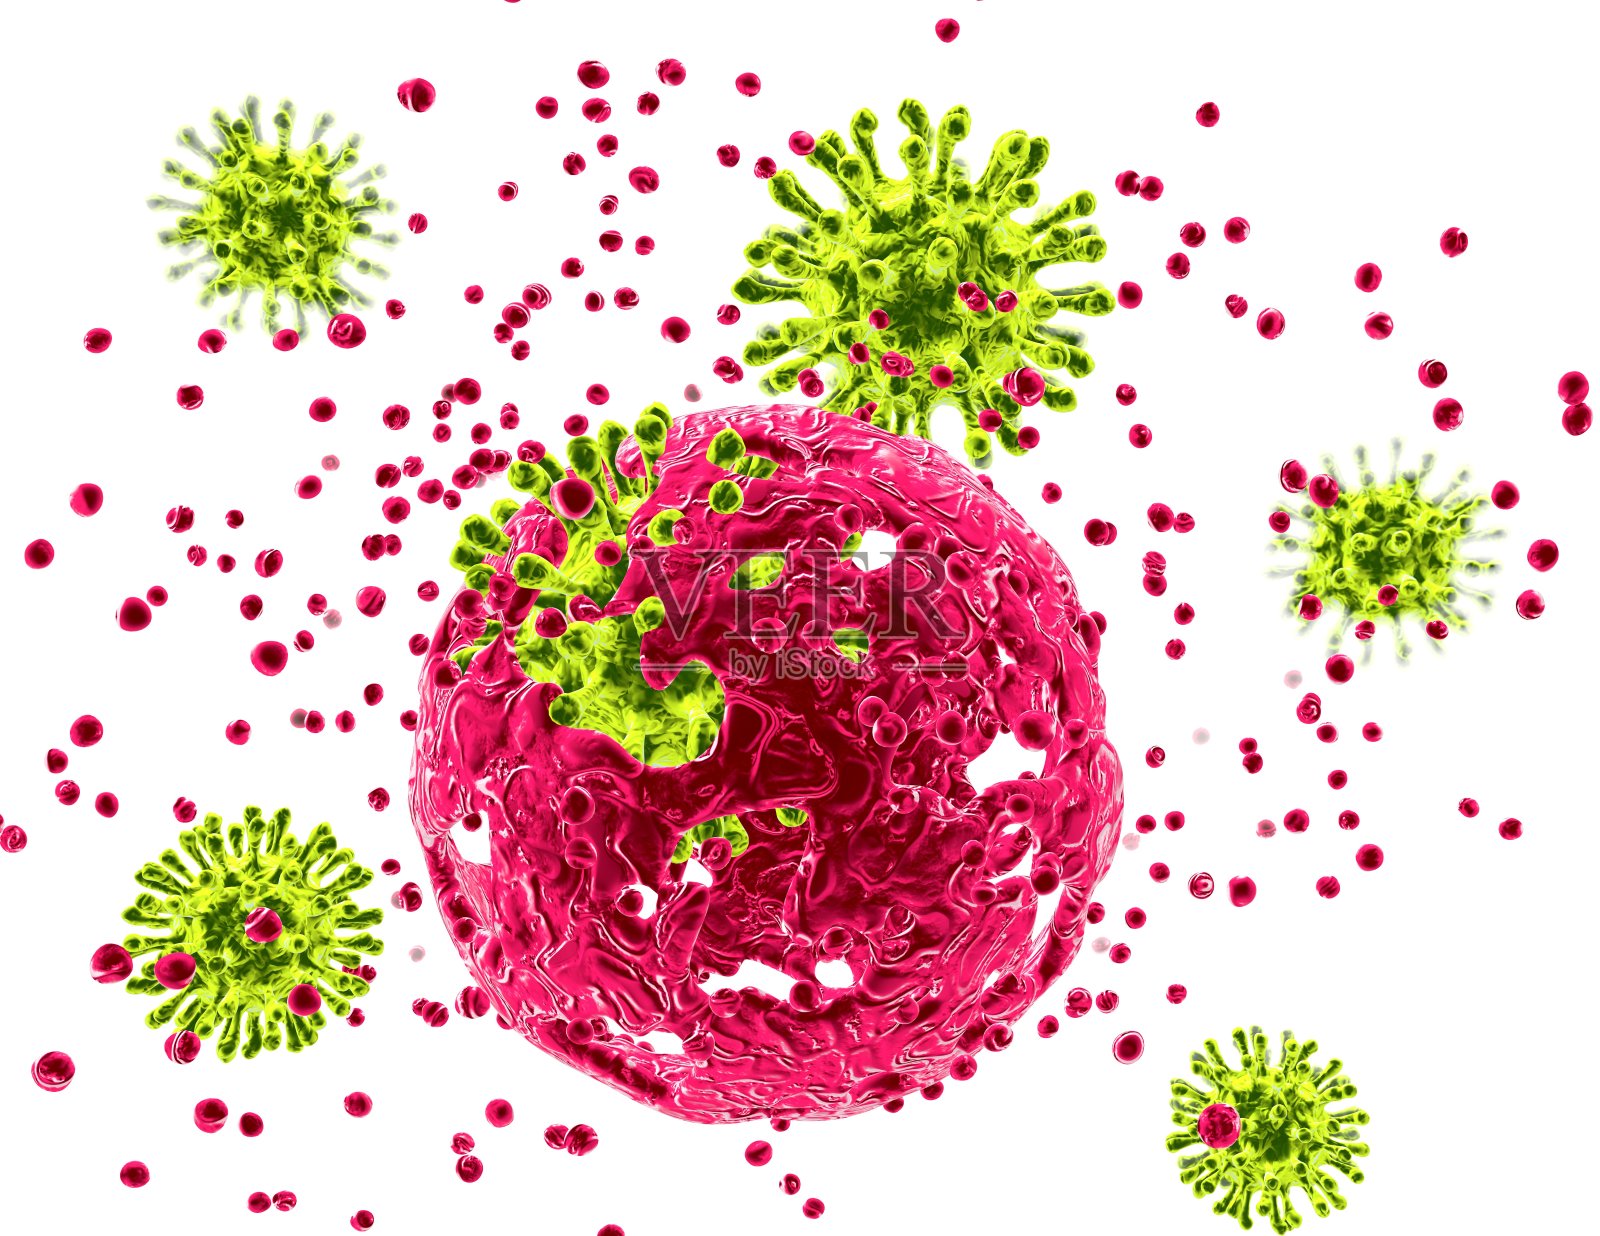 细胞受病毒攻击、疾病、病毒感染的概念。插画图片素材